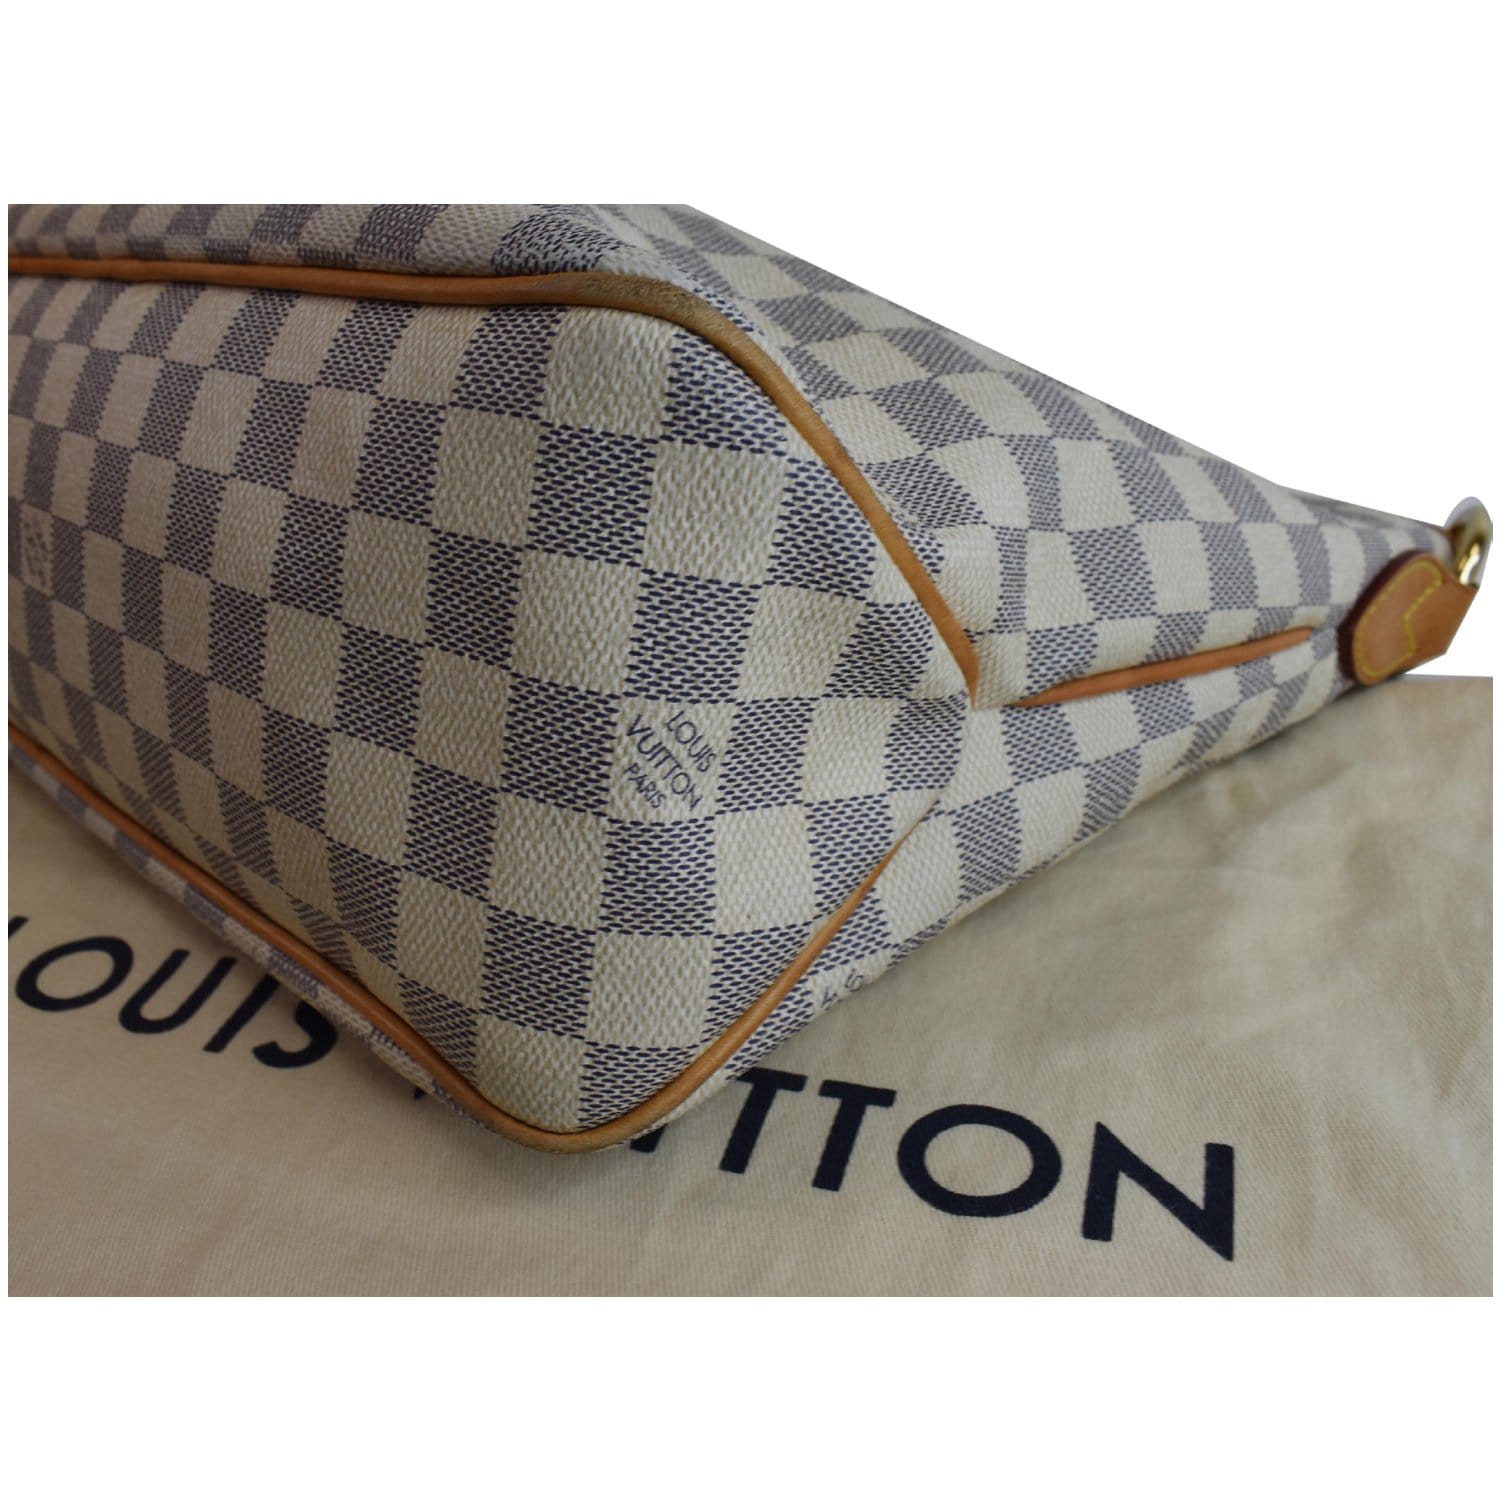 Authentic Louis Vuitton Damier Azur Delightful PM Hobo Shoulder Bag